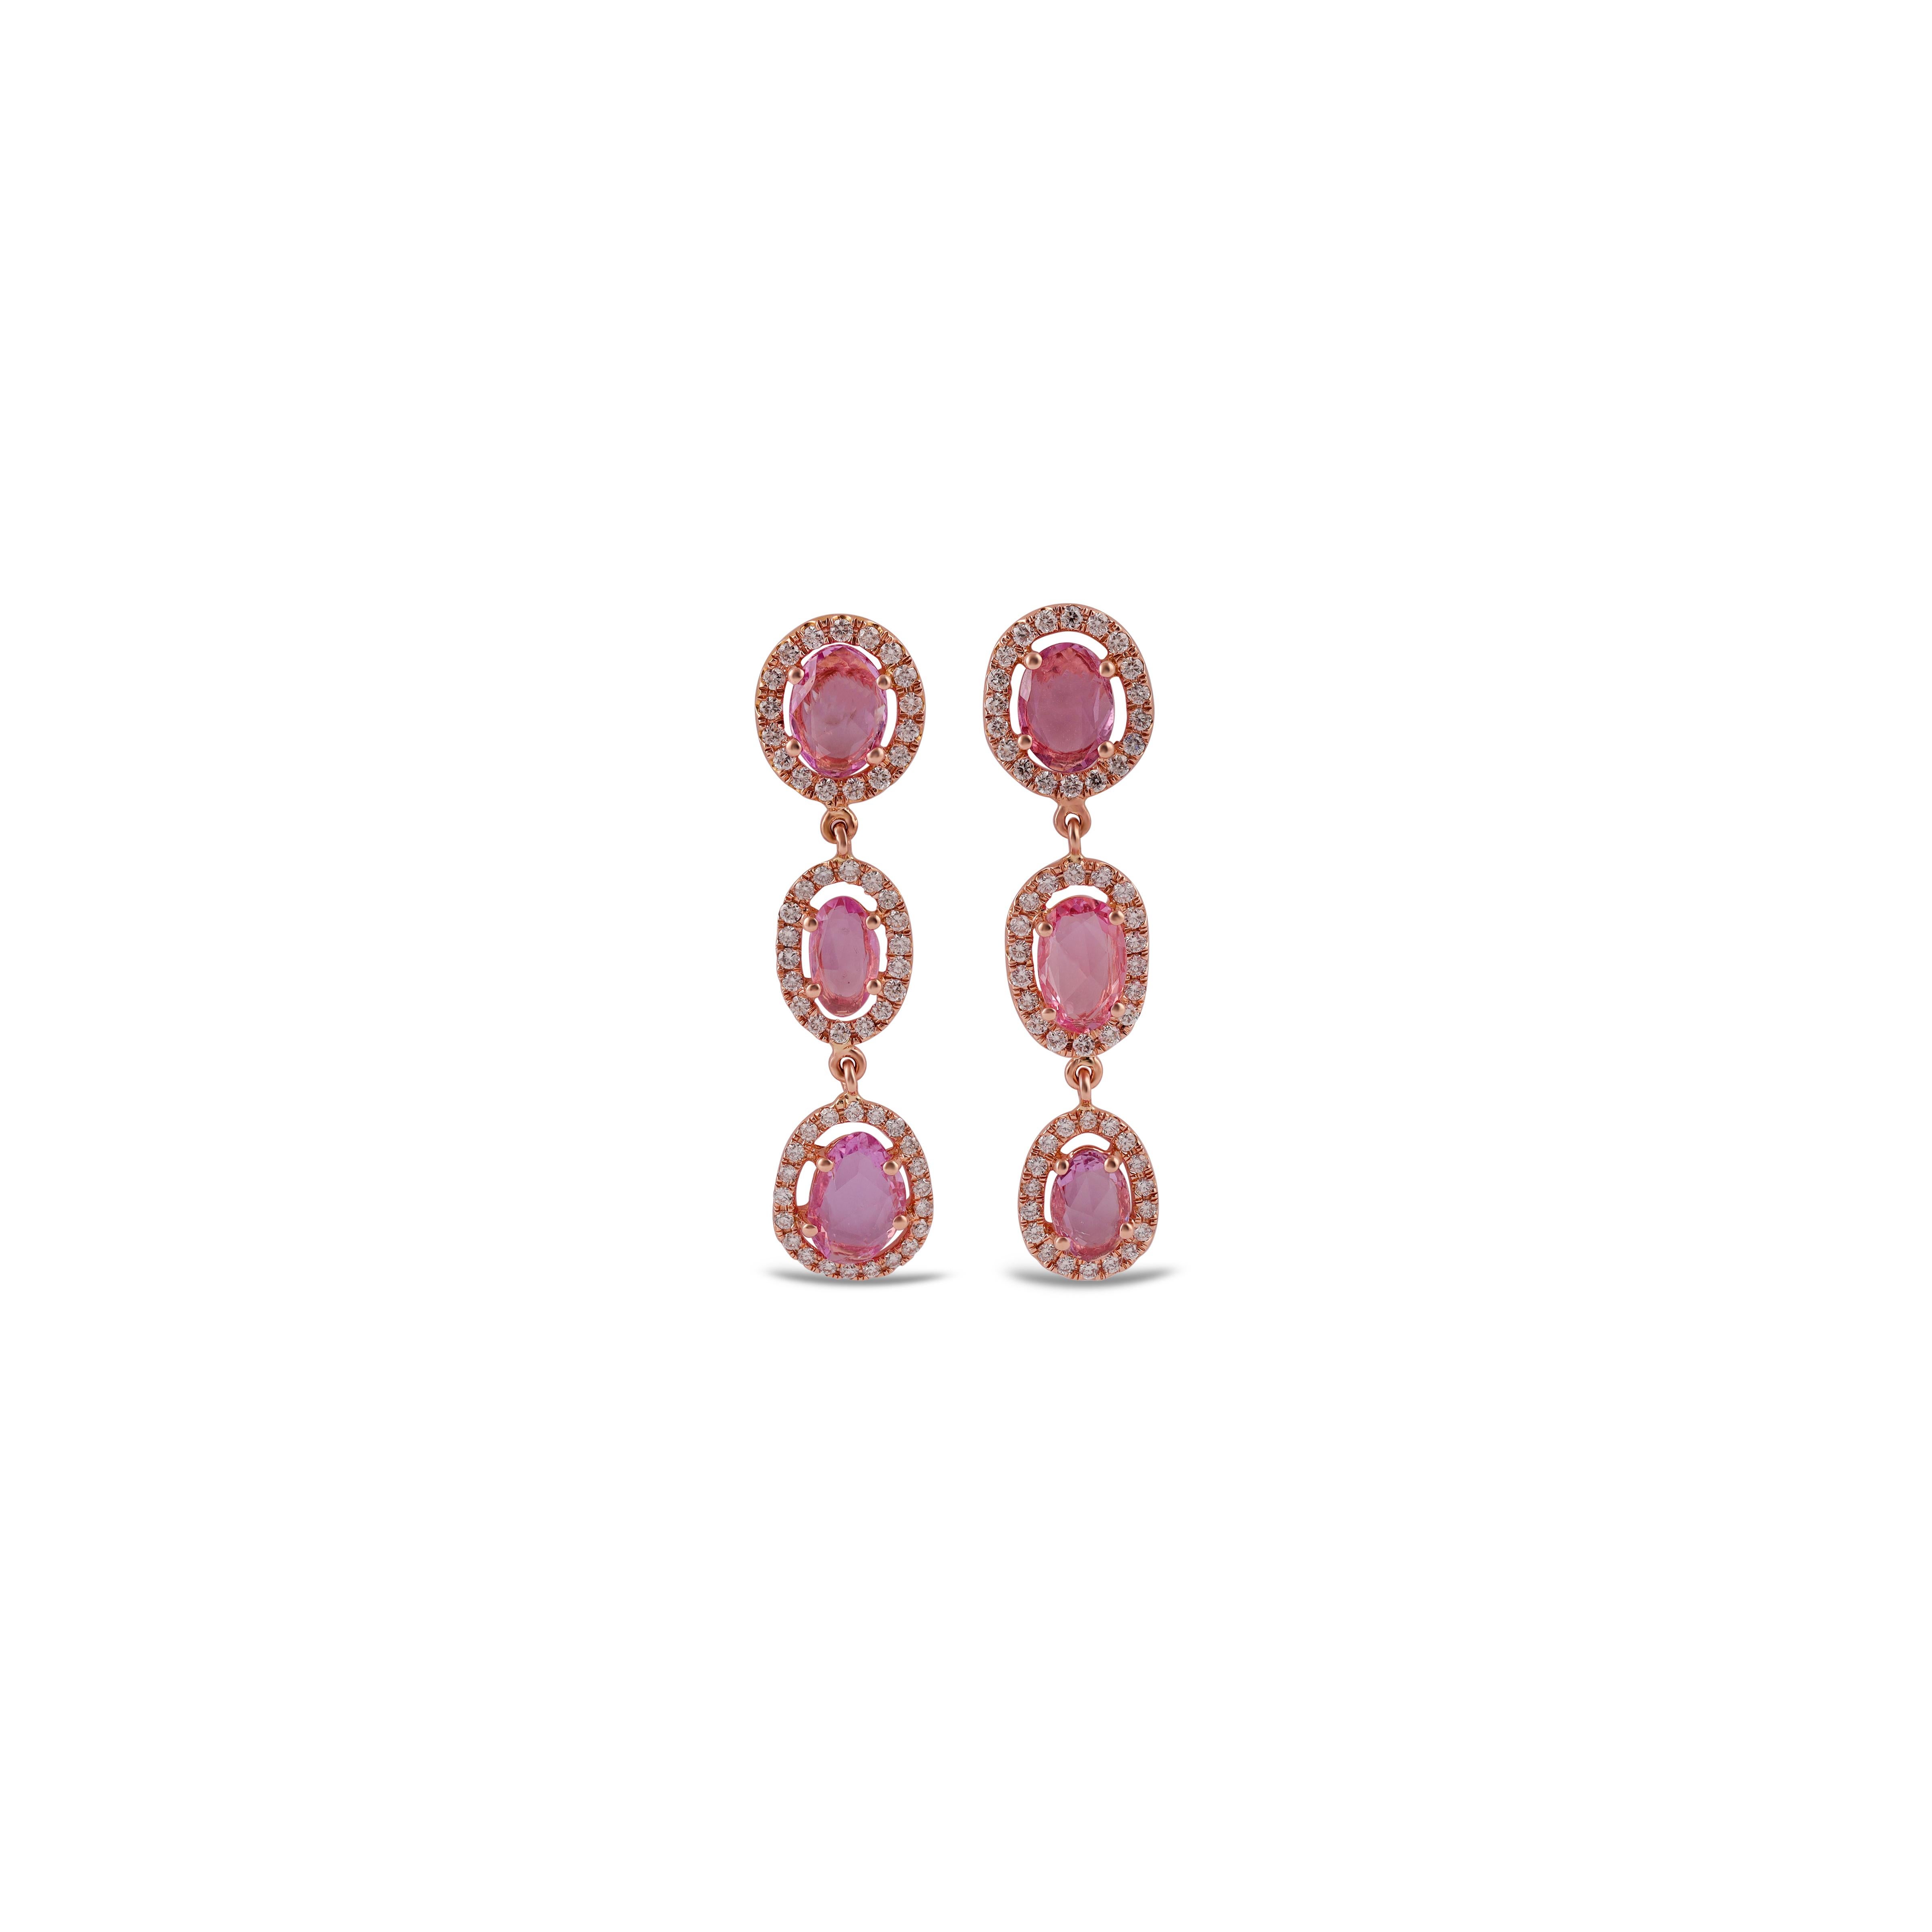 Diese sind eine exklusive Ohrringe mit rosa Saphir & Diamanten verfügt über 6 Stück Saphir Gewicht 2,86 Karat, mit 111 Stück runden Brillantschliff von Diamanten Gewicht 0,69 Karat umgeben, Diese gesamte Ohrringe sind in 18k Rose Gold bespickt.